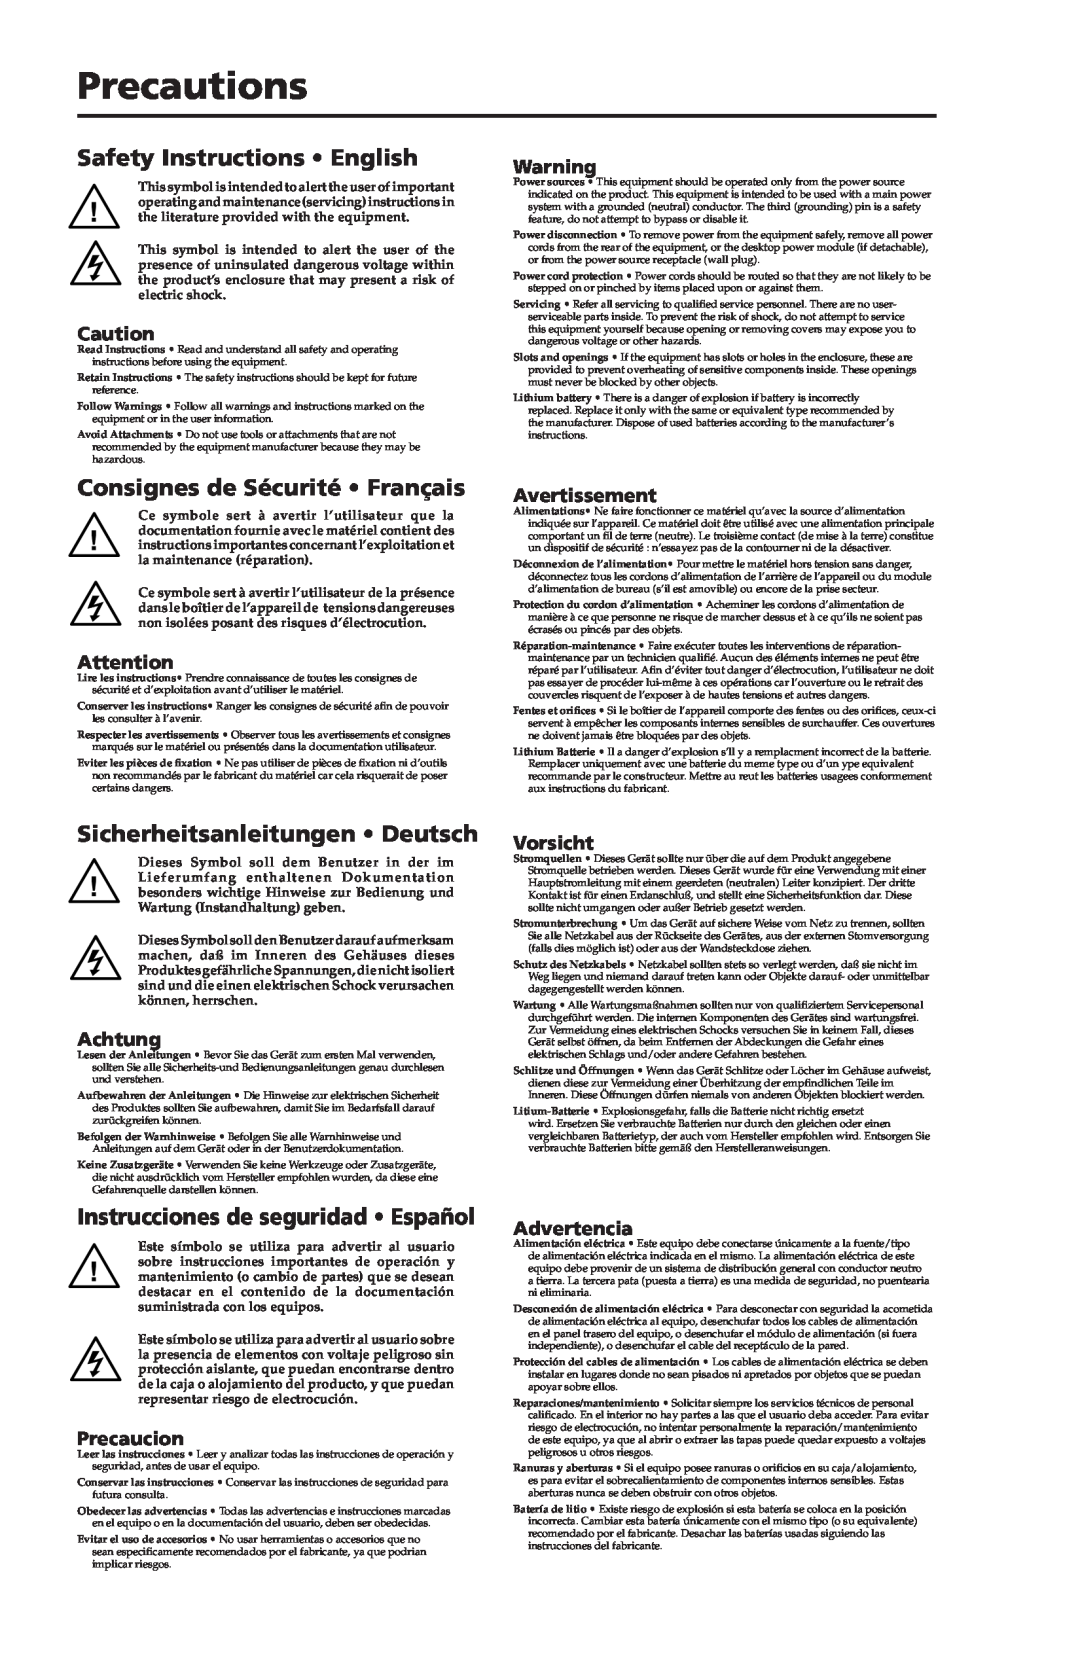 Extron electronic P/2 DA4XI manual Precautions, Safety Instructions English, Consignes de Sécurité Français, Avertissement 